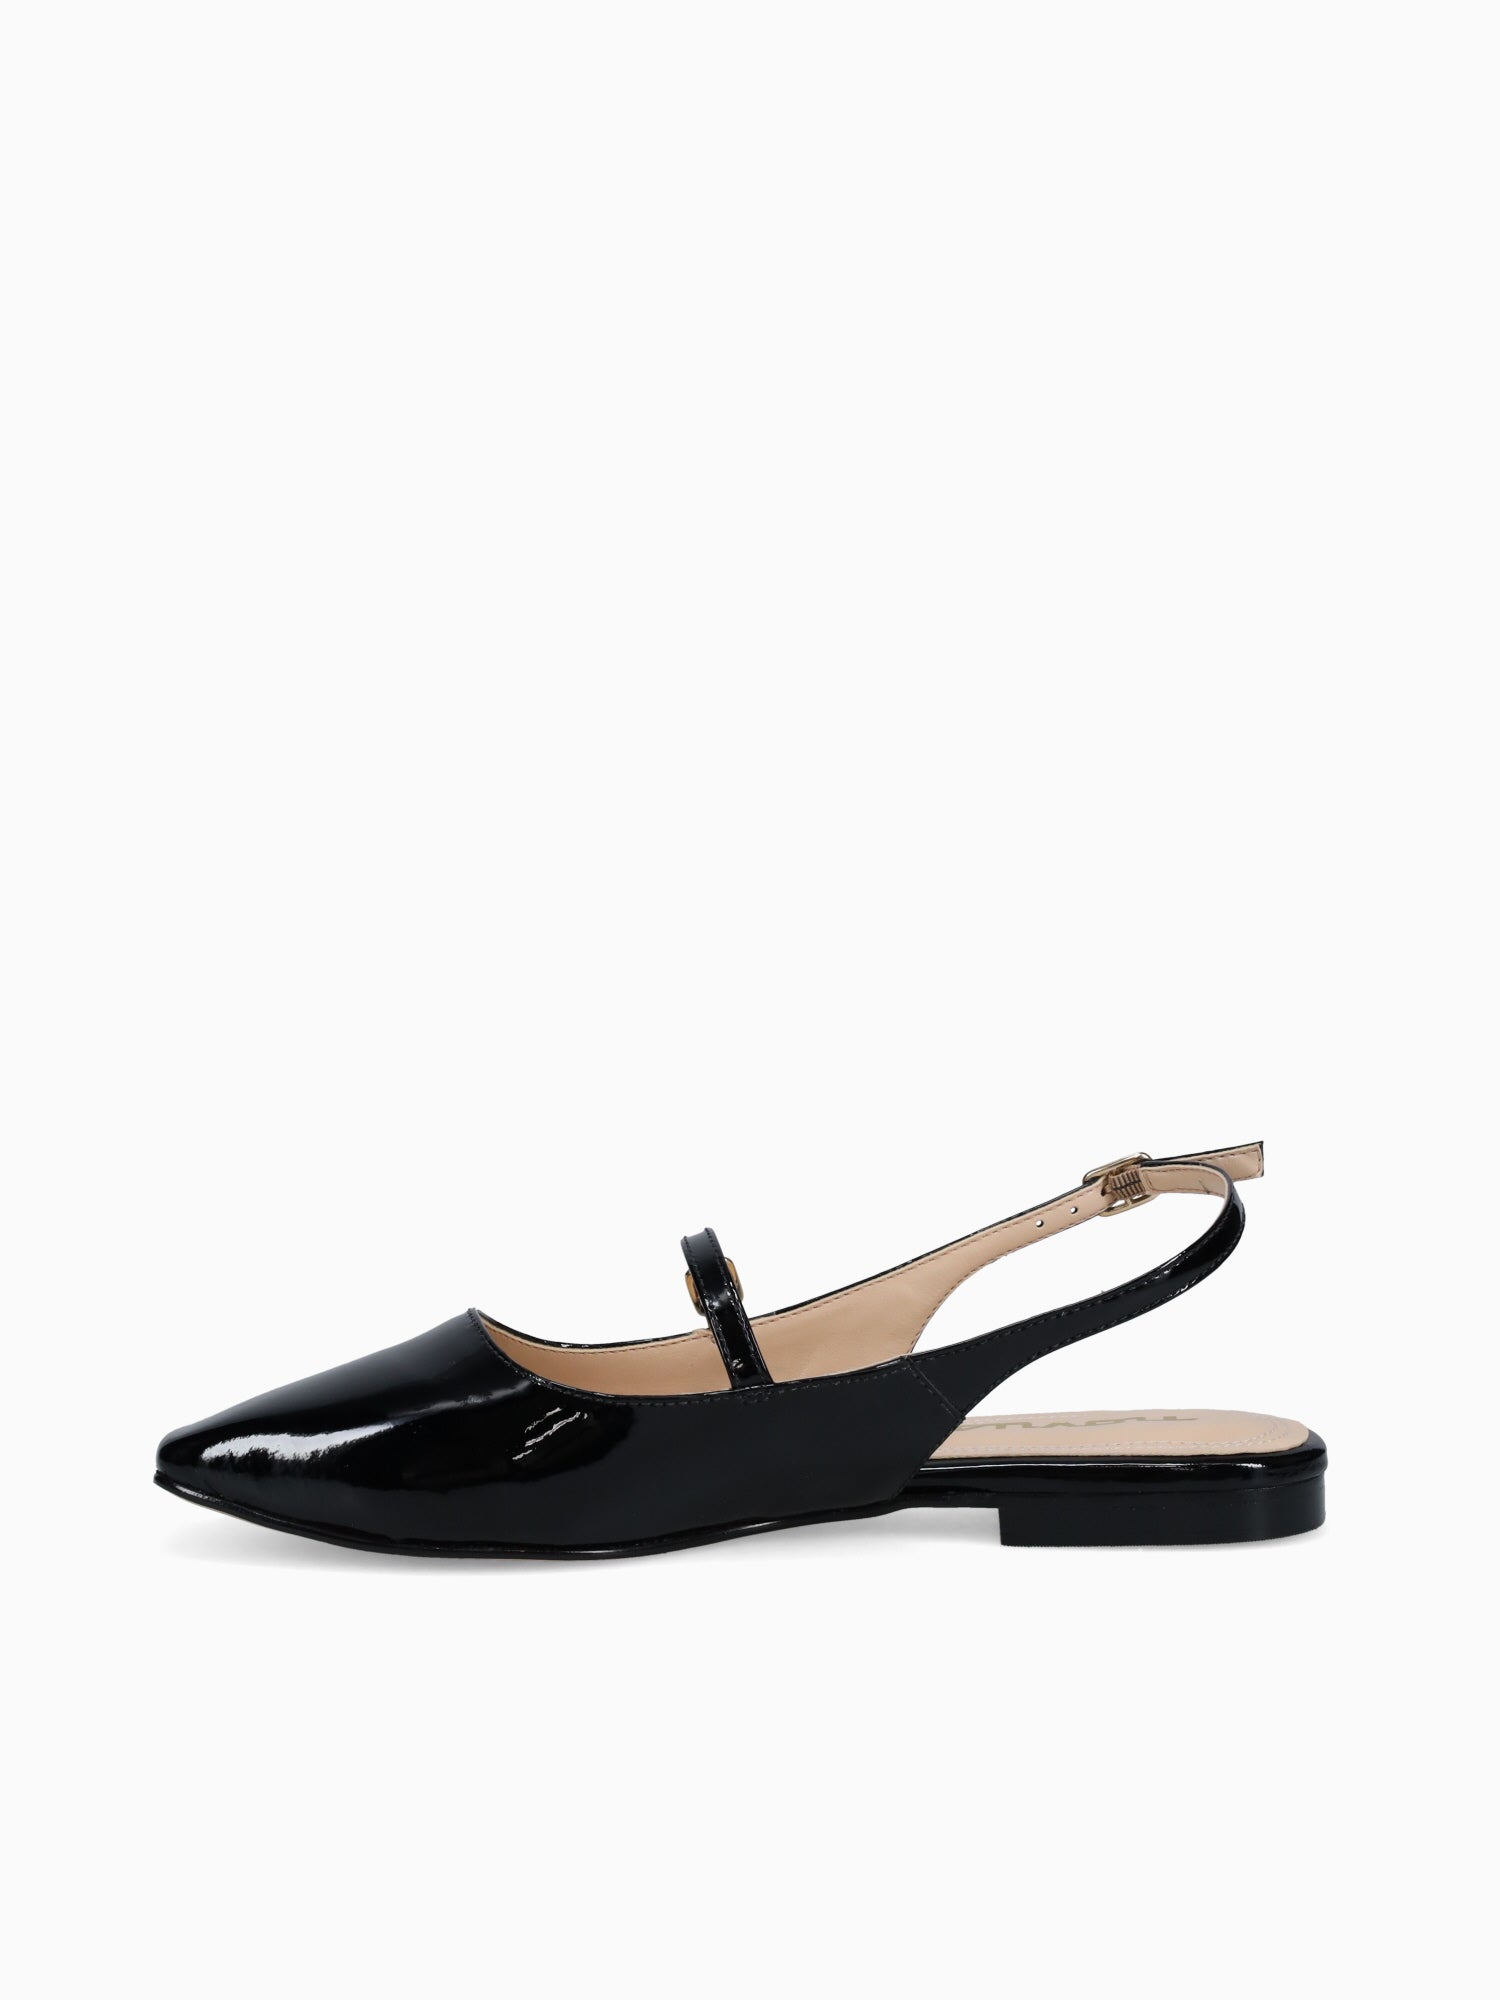 Bianca Black Patent Leather– Novus Shoes